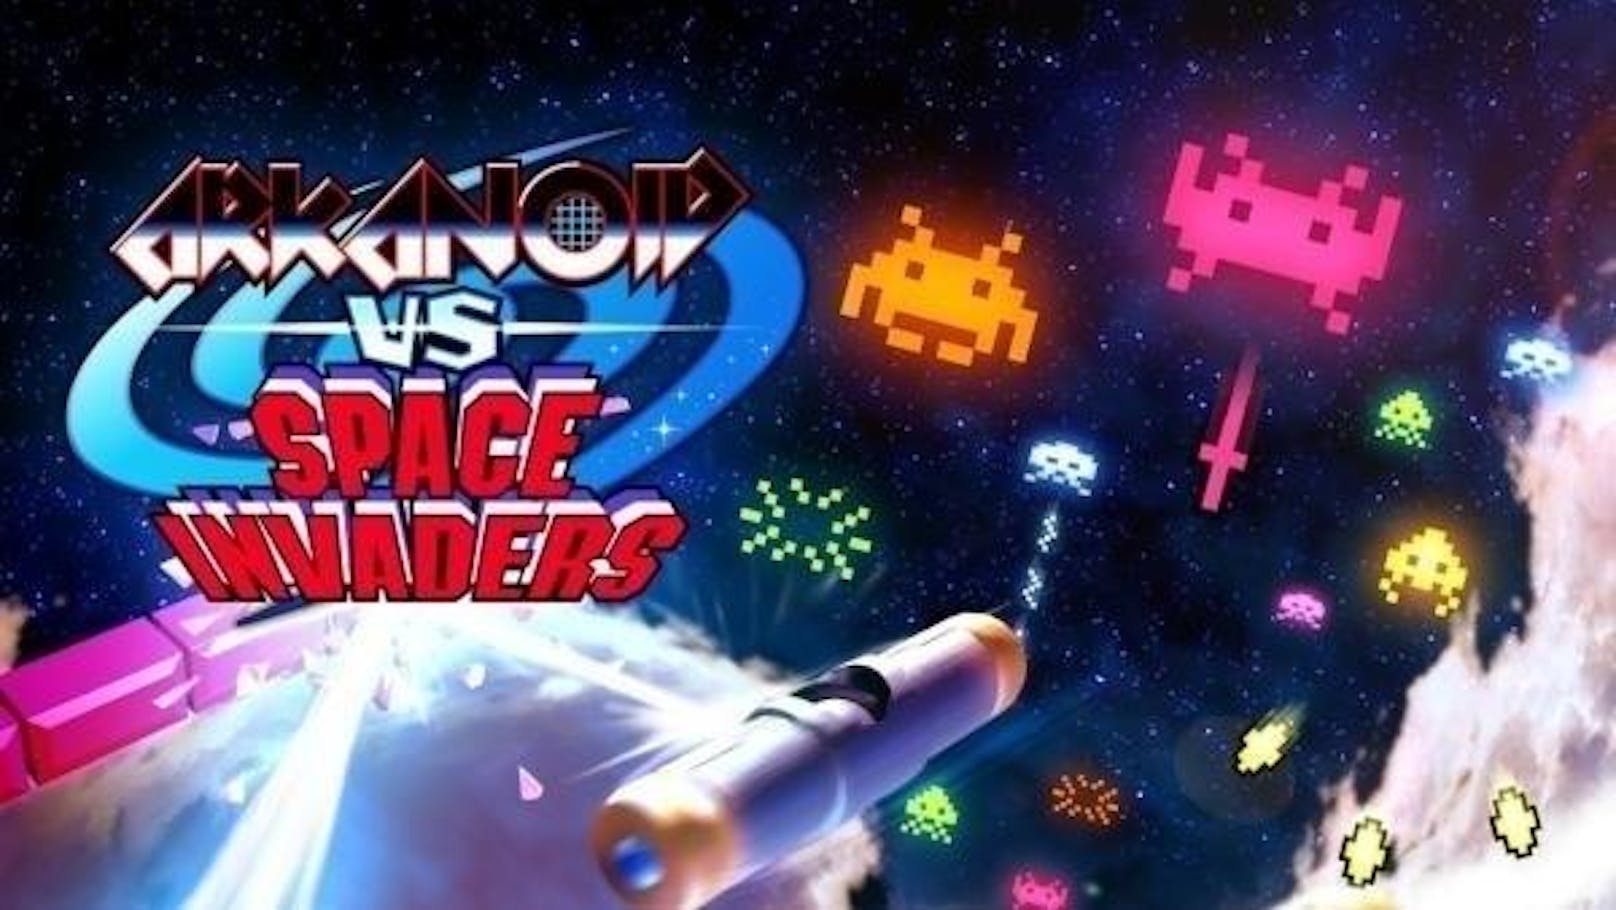 Schießbuden-Spaß: Das irre Arcade-Game "Arkanoid vs. Space Invaders" vereinigt zwei Spielklassiker in einem Game. Wieso da früher noch nie jemand draufgekommen ist?